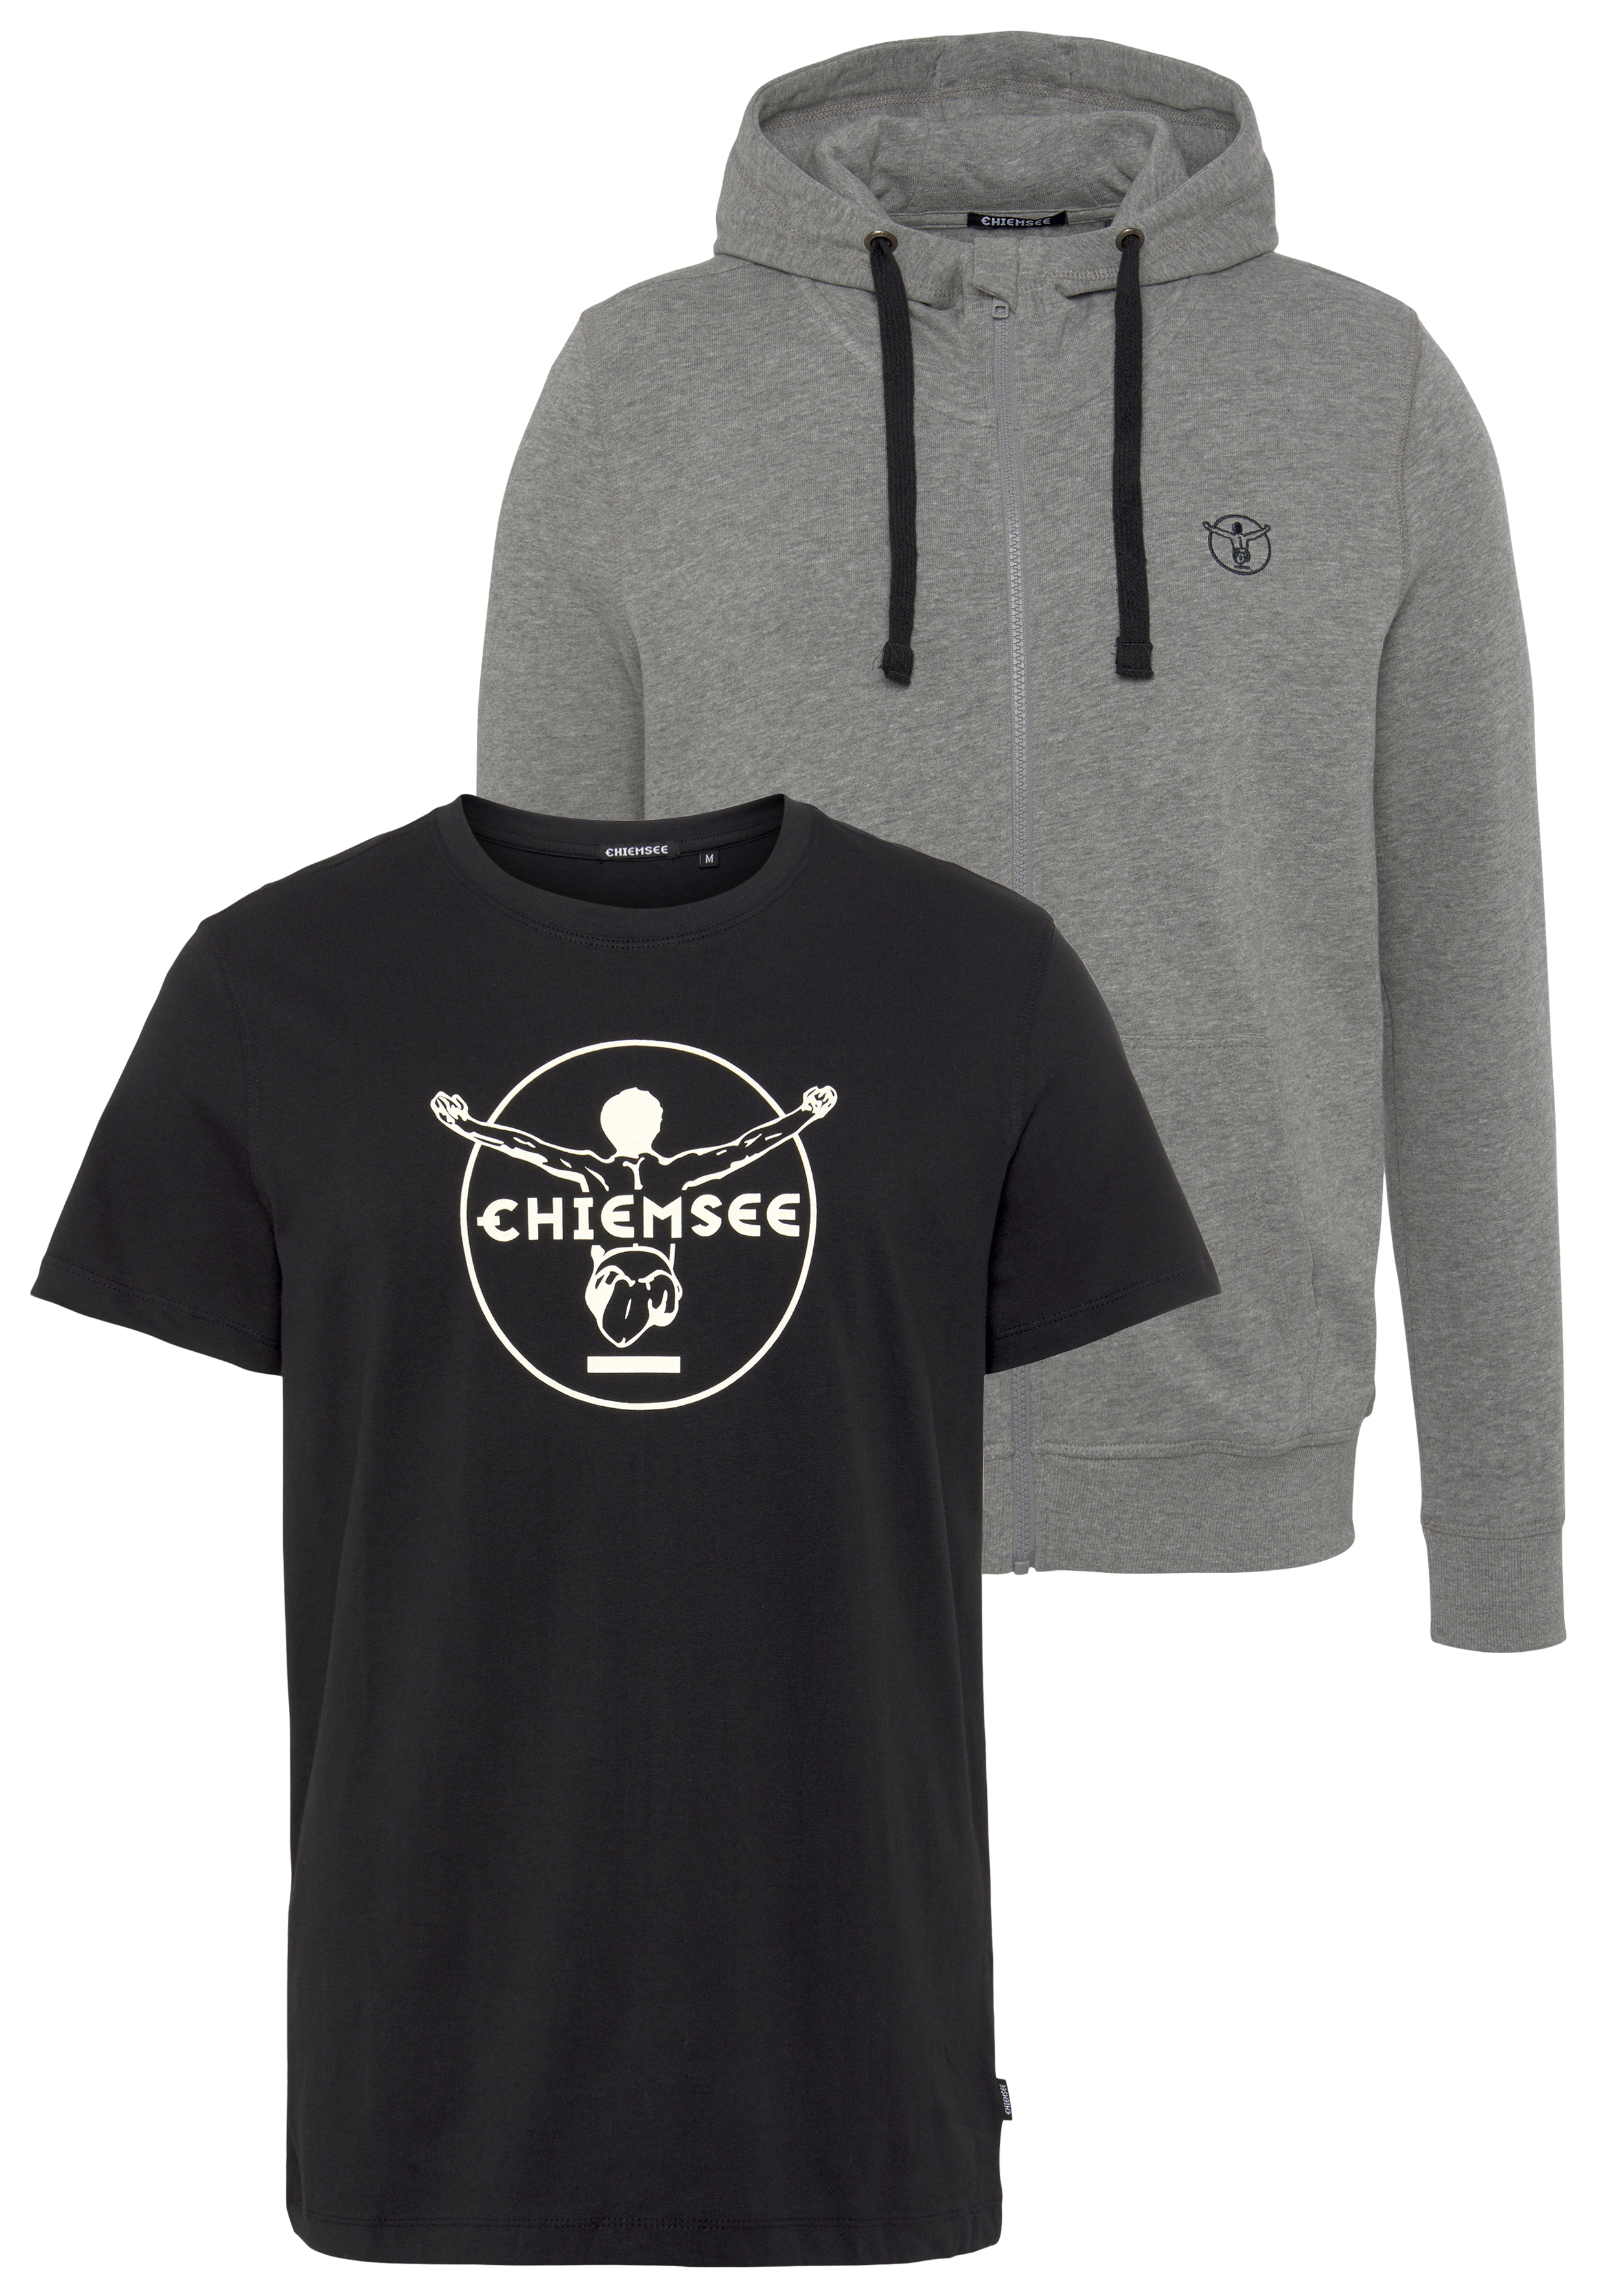 Kleidung Chiemsee | SALE & Outlet %% BAUR Angebote günstige